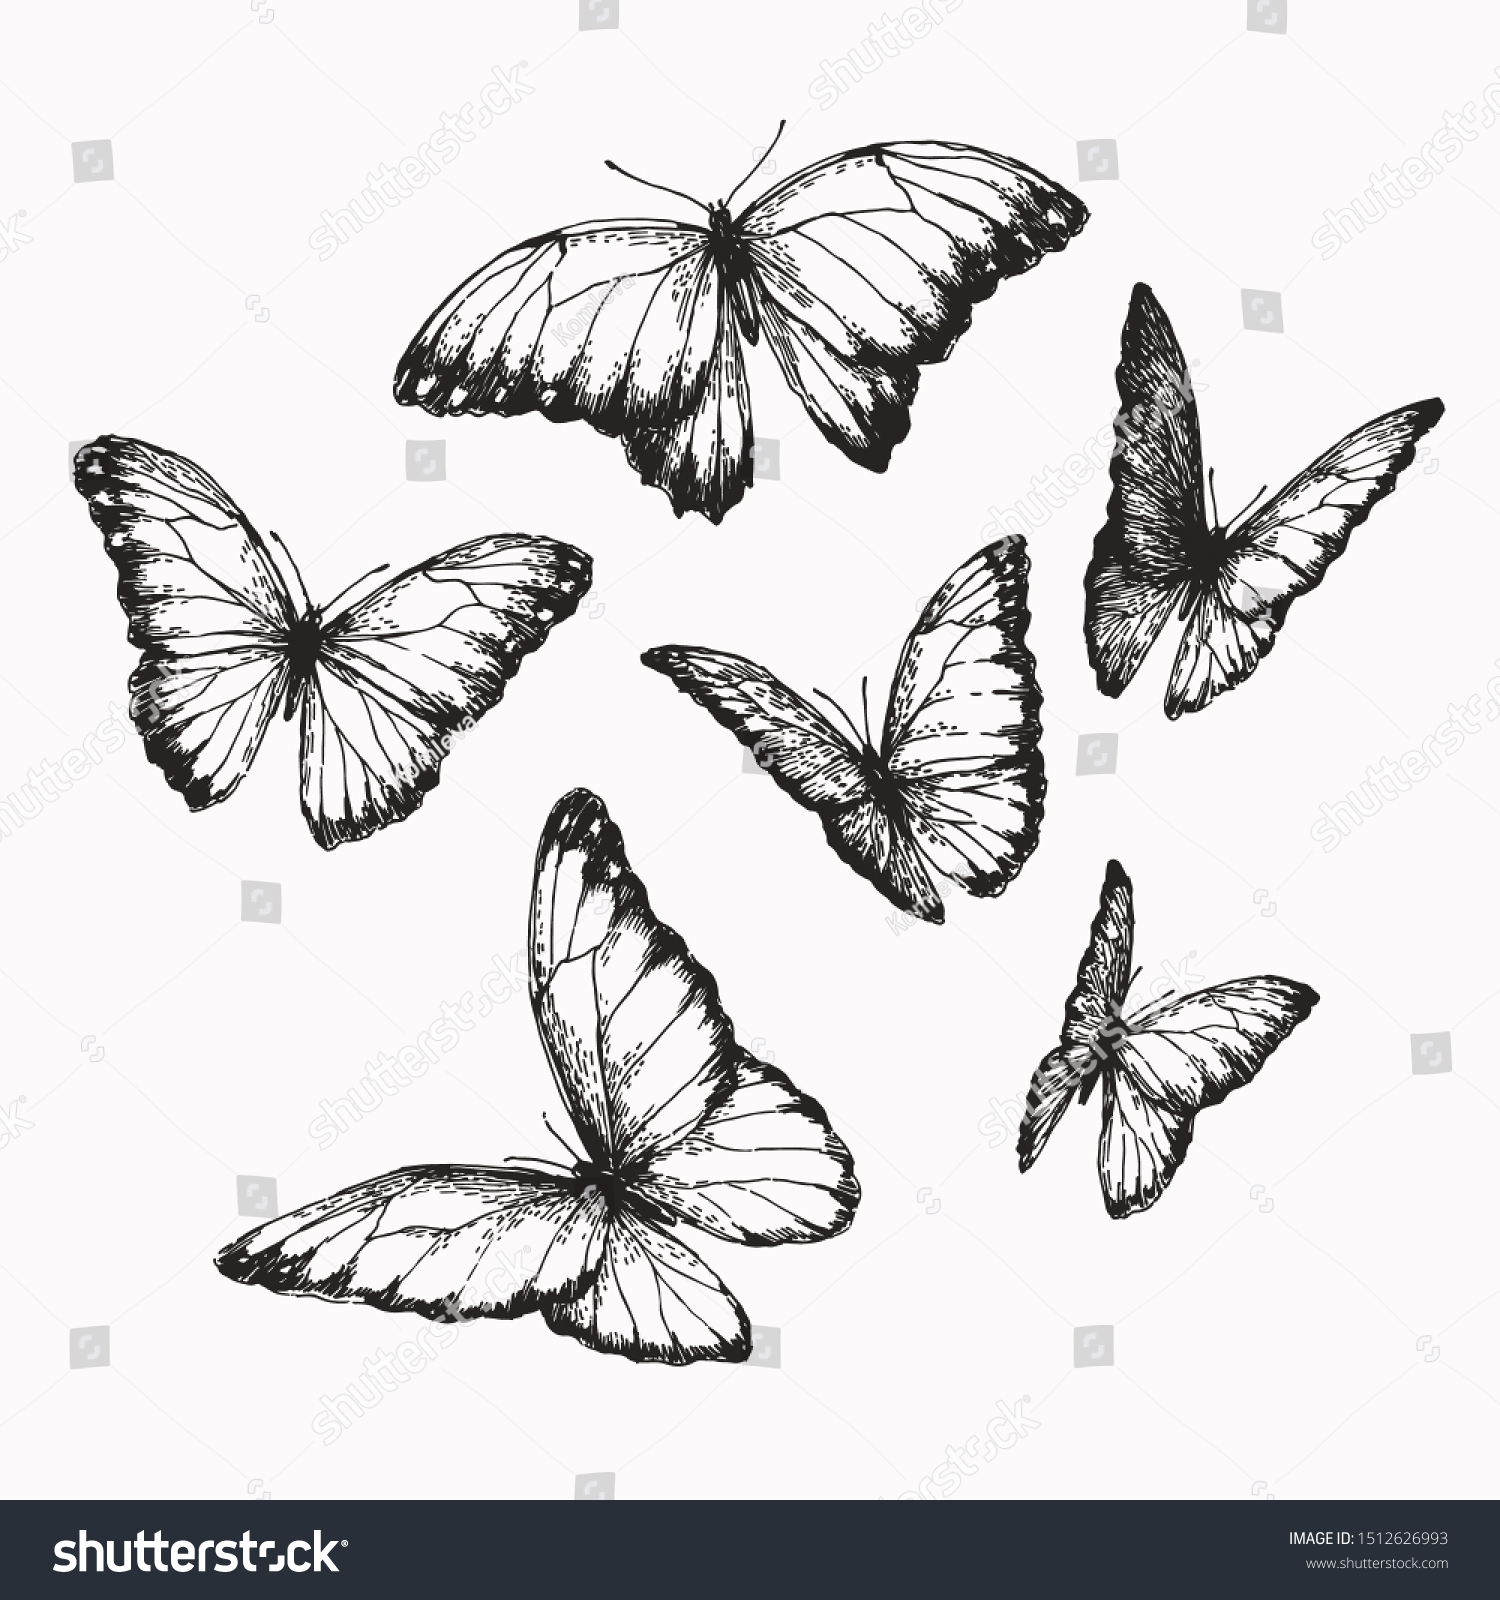 Бабочки в разных положениях